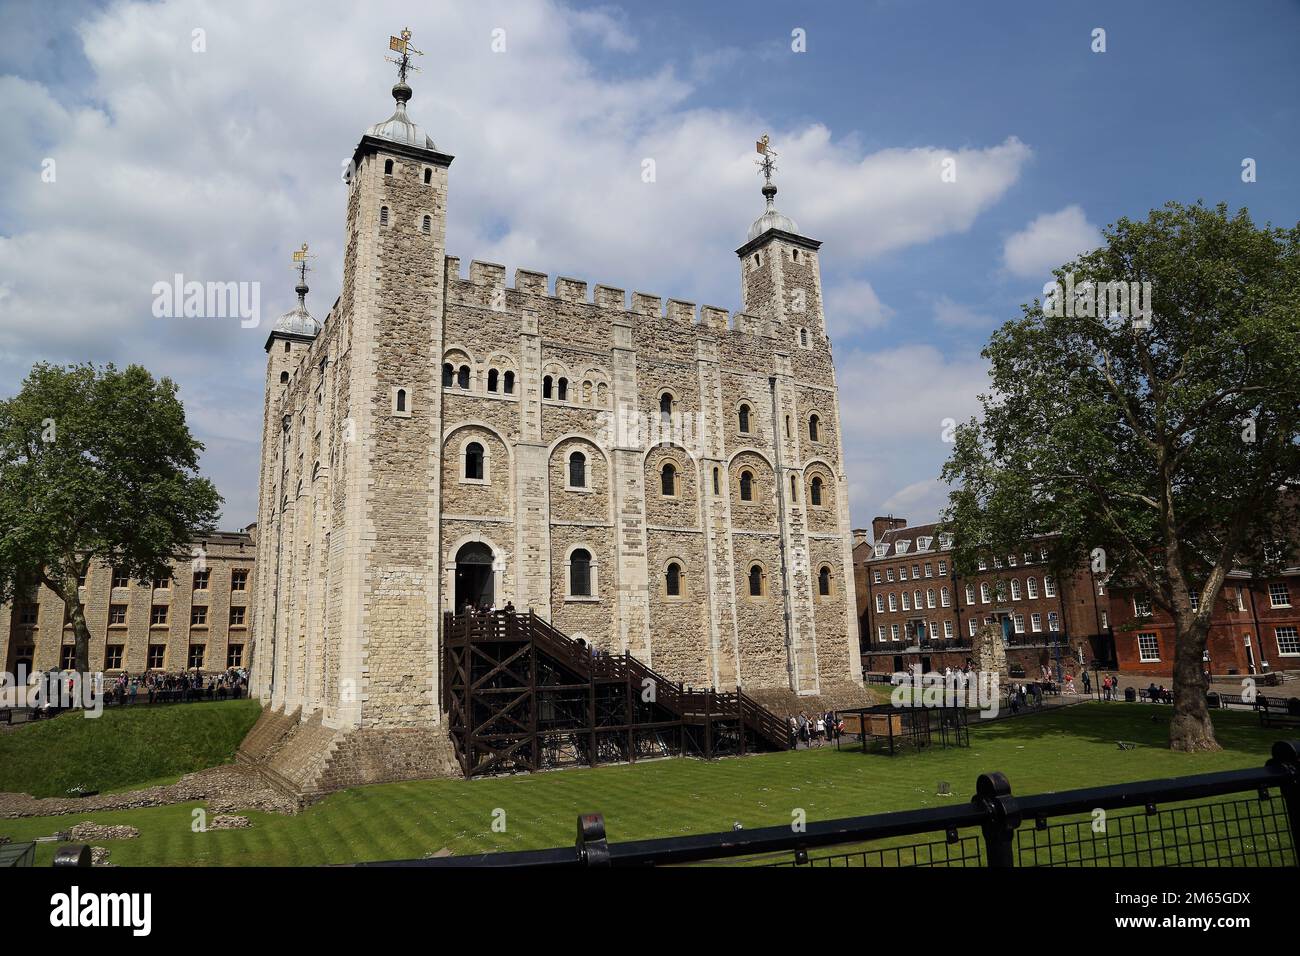 LONDON, GROSSBRITANNIEN - 16. MAI 2014: Es ist der Weiße Turm, der von Wilhelm dem Eroberer erbaut wurde und der zentrale Turm des Tower of London ist. Stockfoto